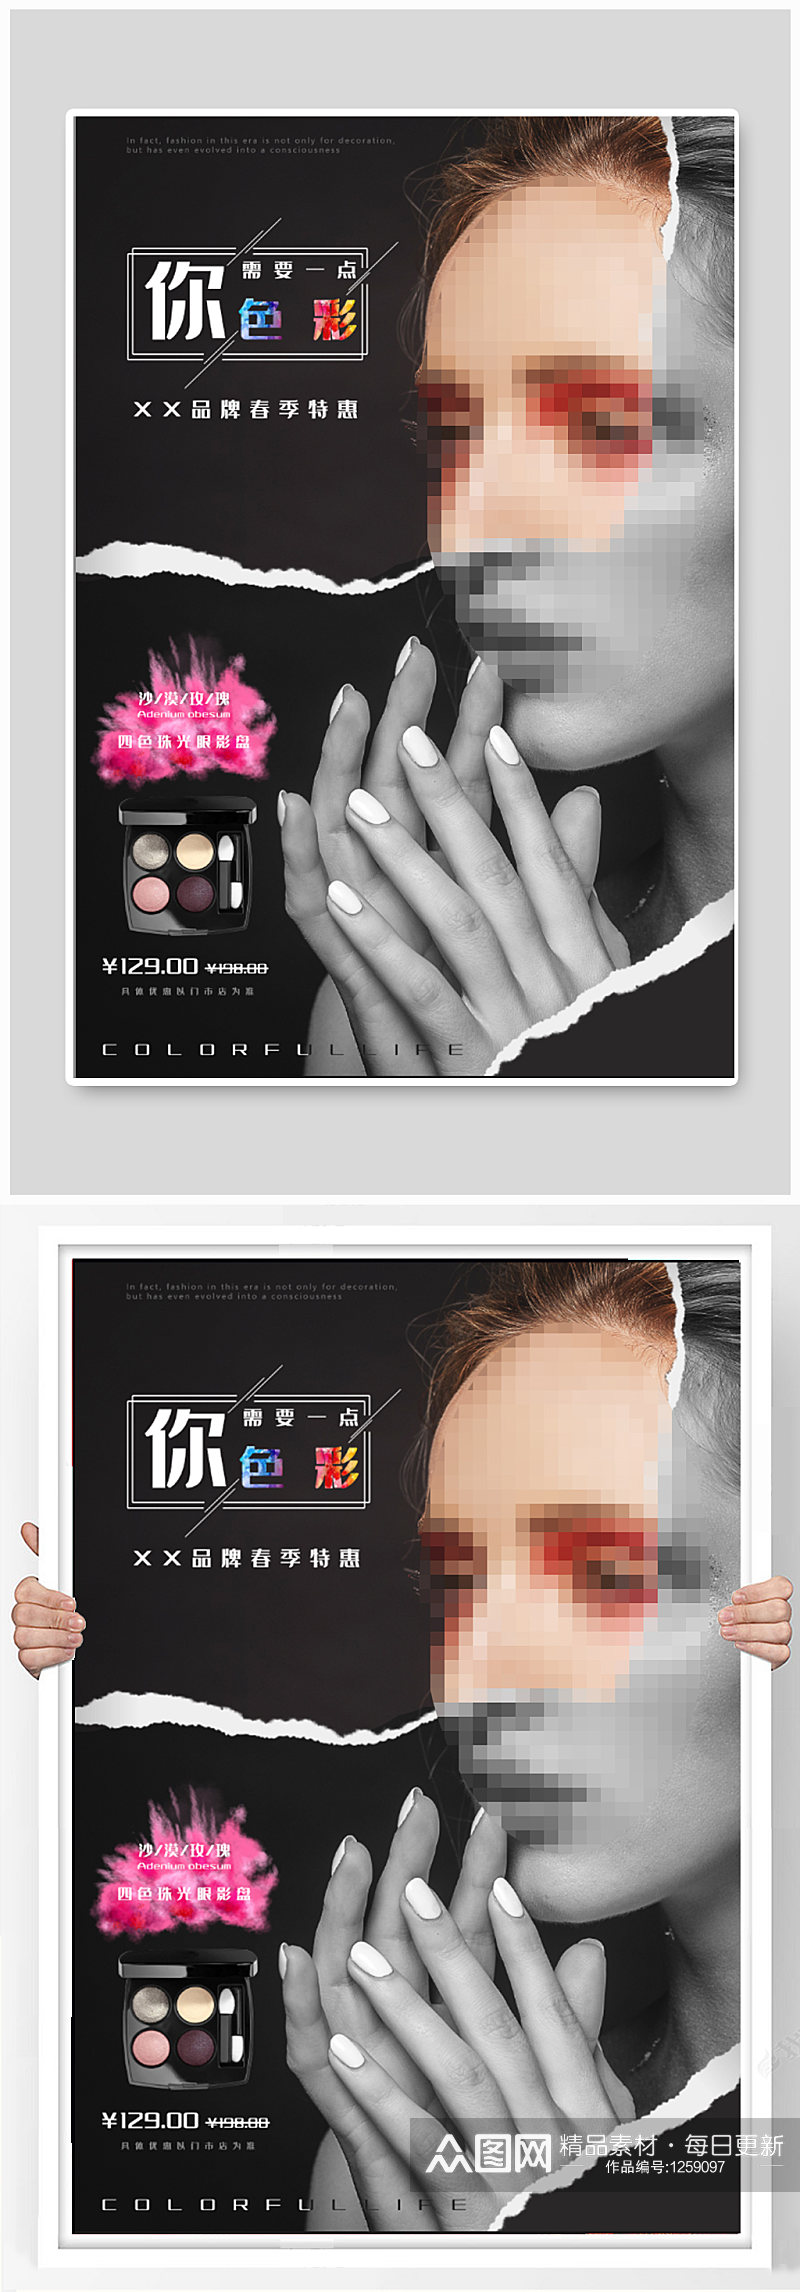 美妆产品海报展板素材